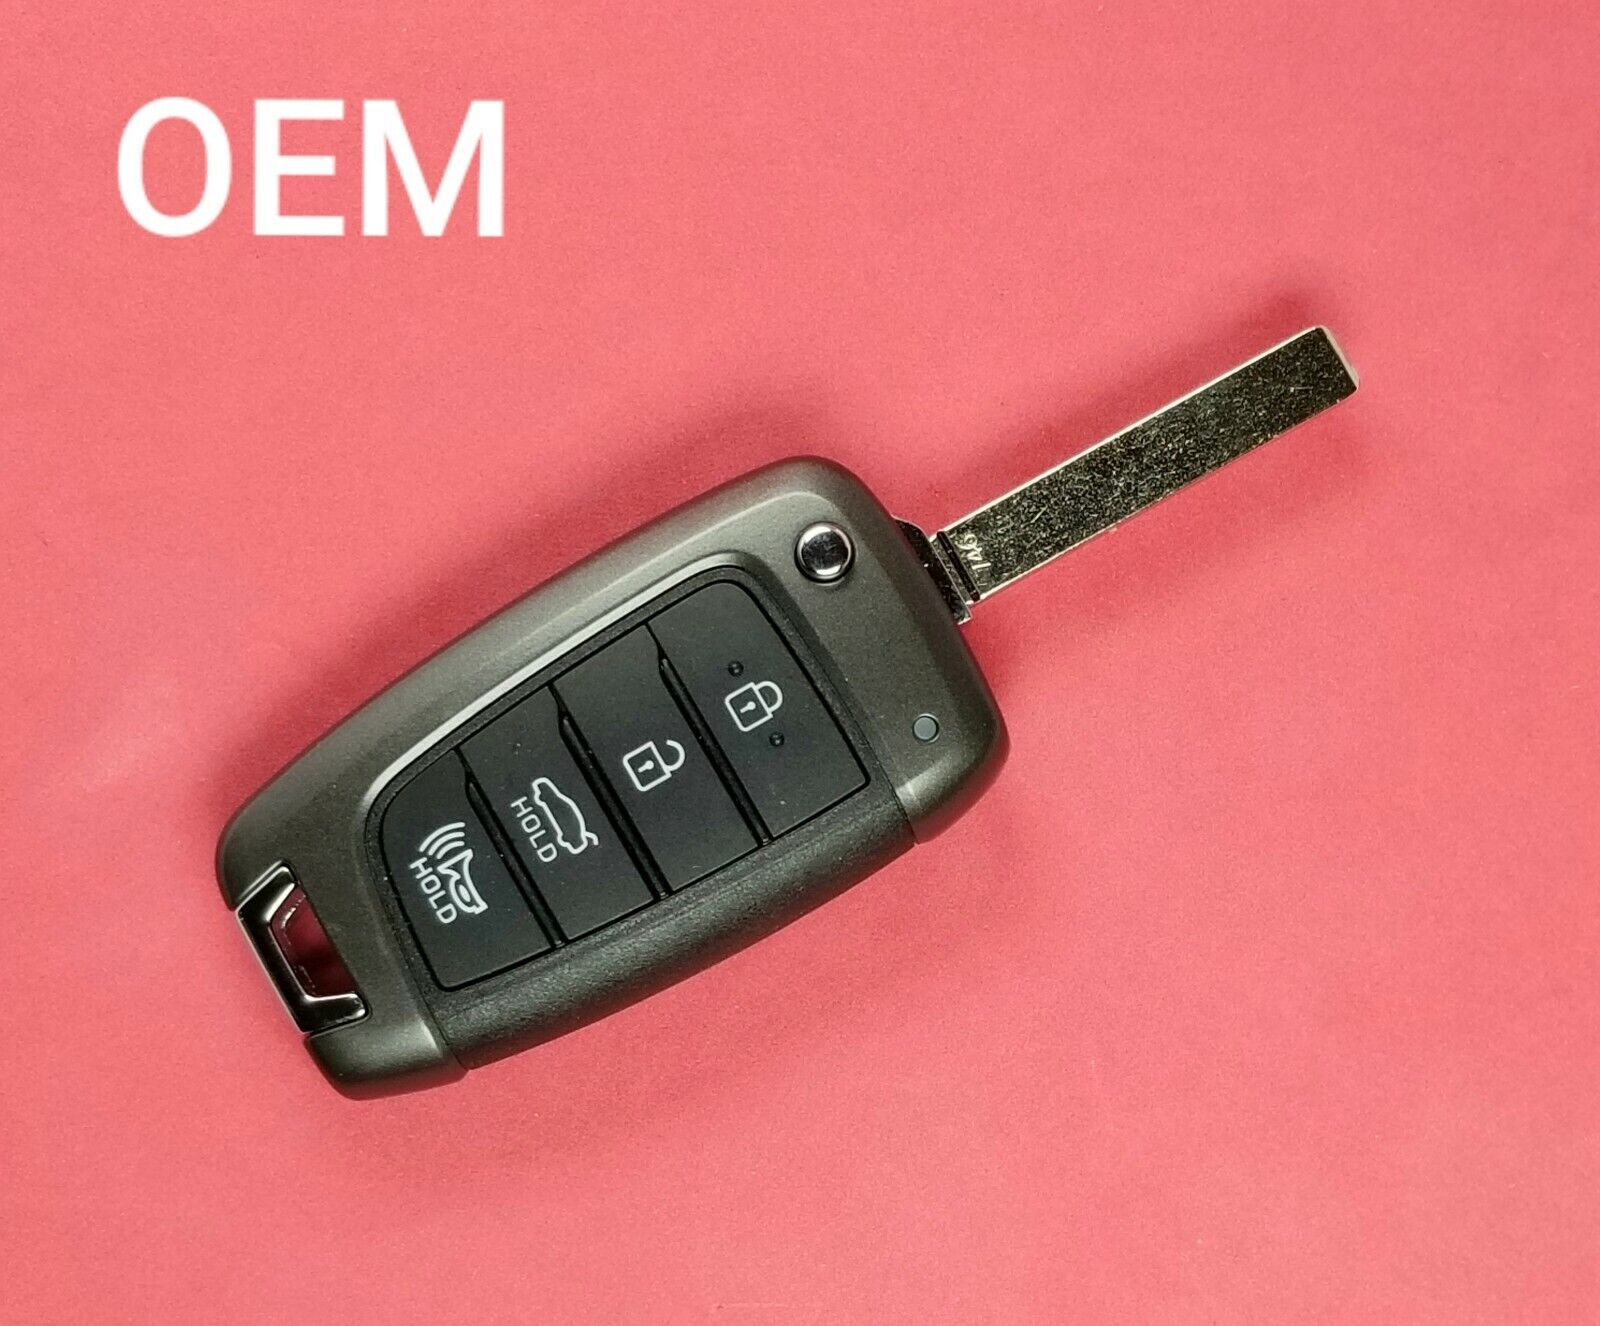 NYOSYEC4TX1707 (HC) OEM 2018 - 2021 Hyundai Accent Keyless Entry Remote Flip Key